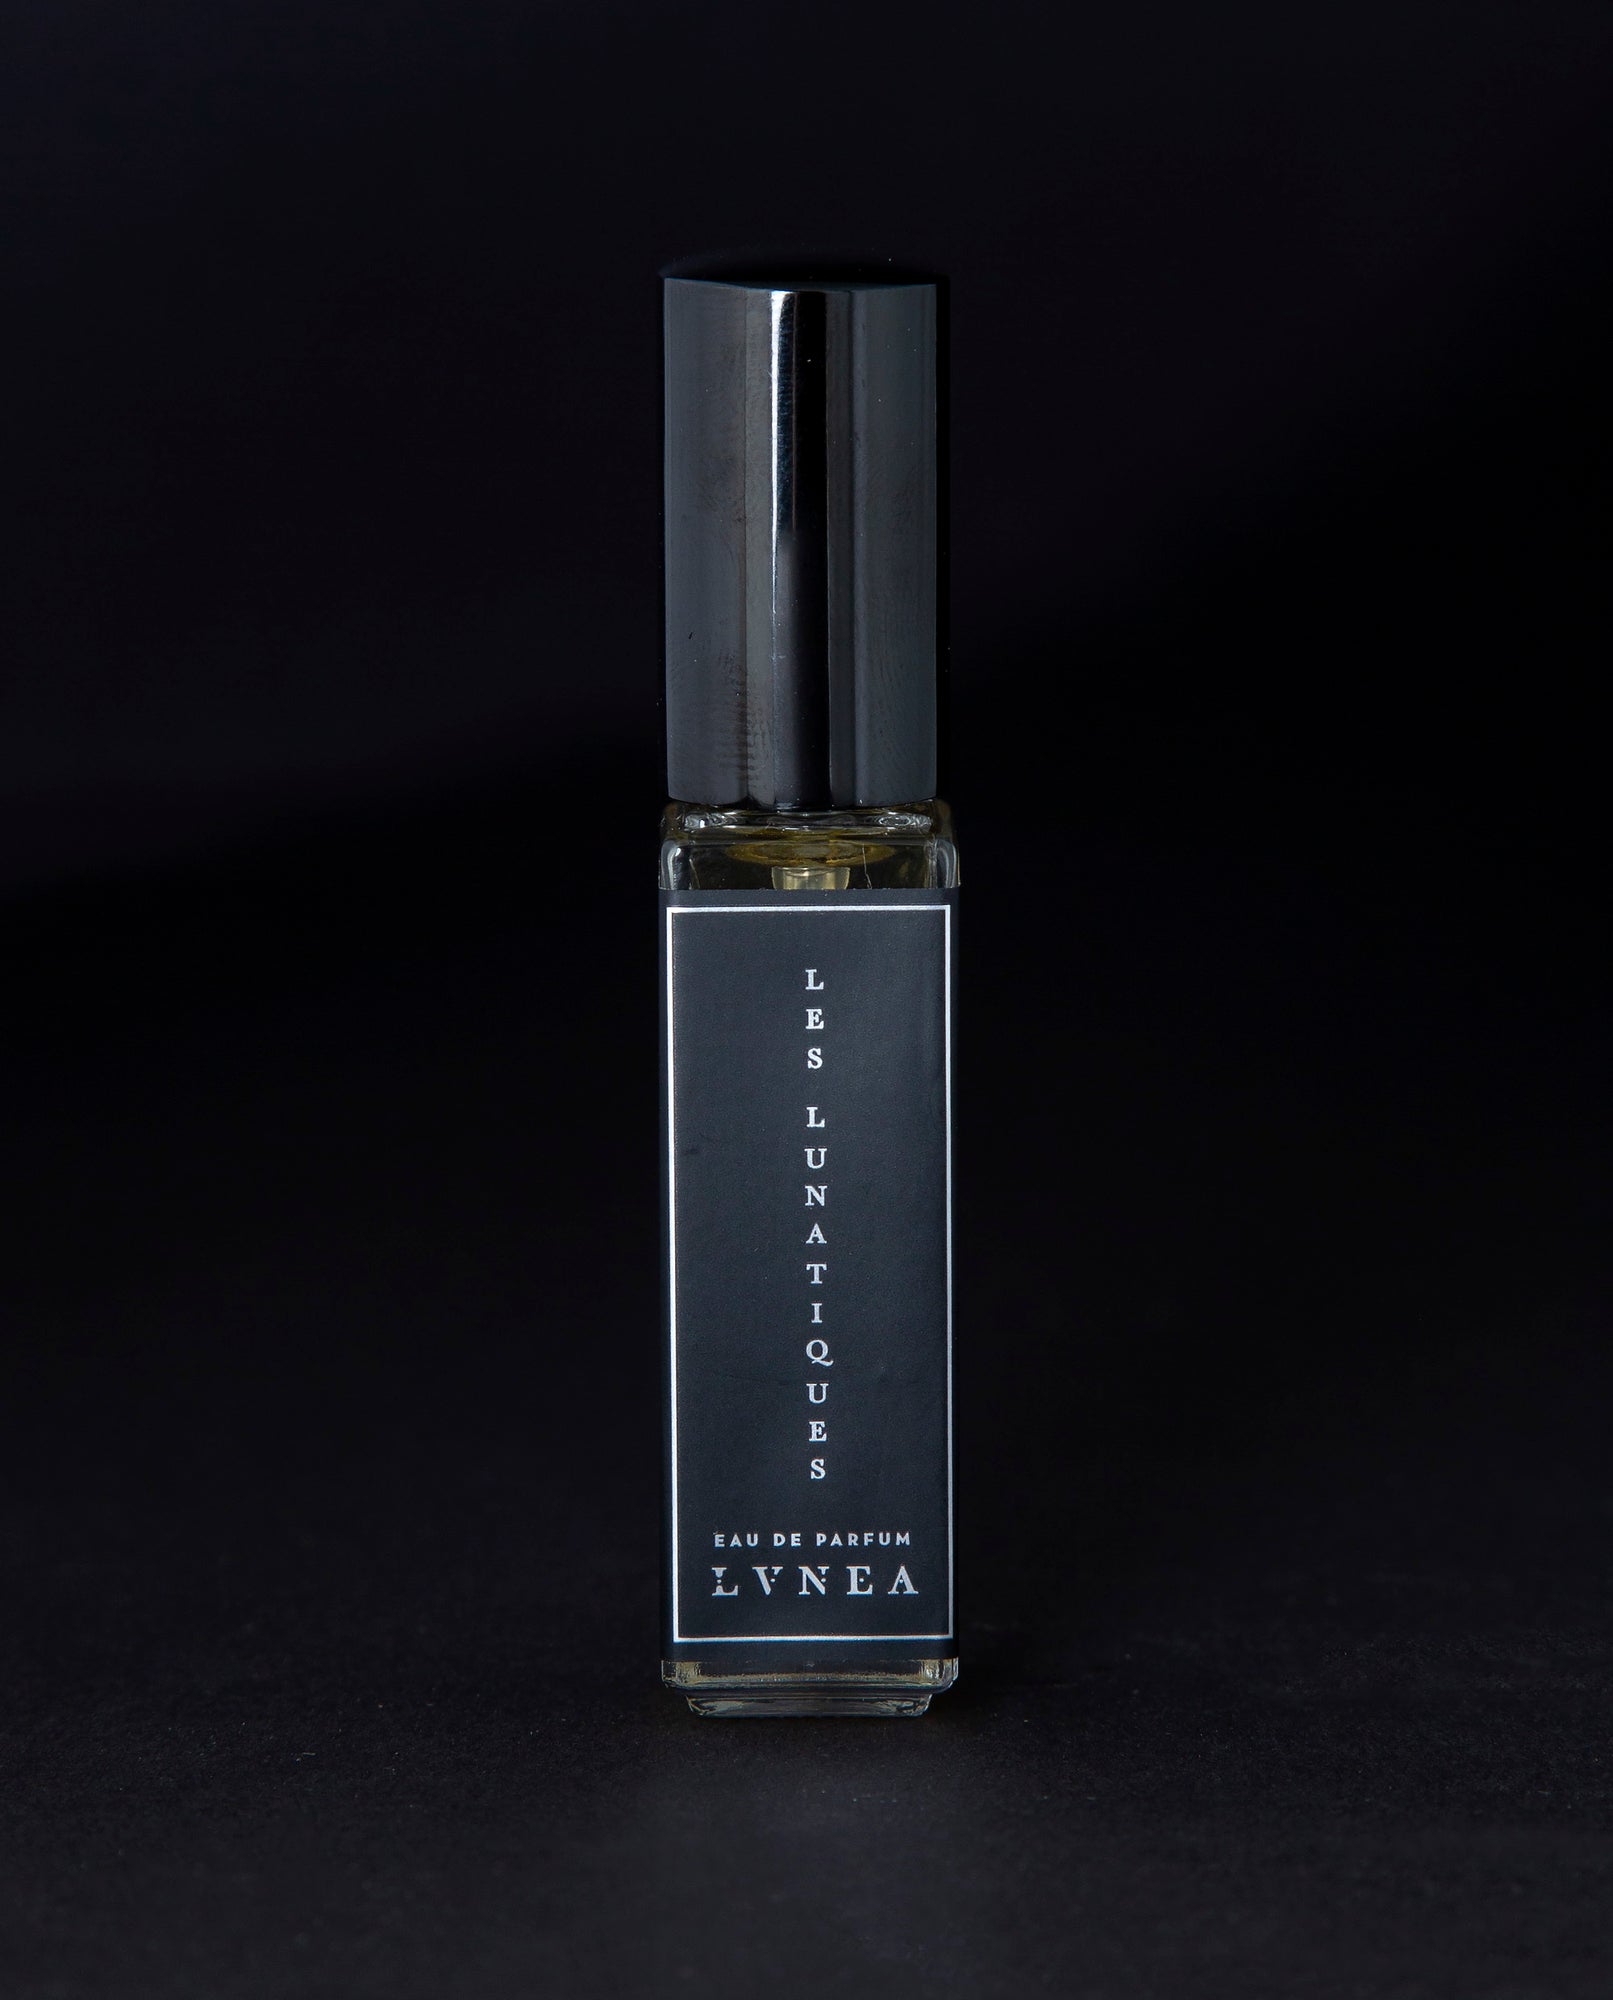 LES LUNATIQUES  Eau de Parfum - wormwood, copal, musk, sandalwood – Lvnea  Perfume